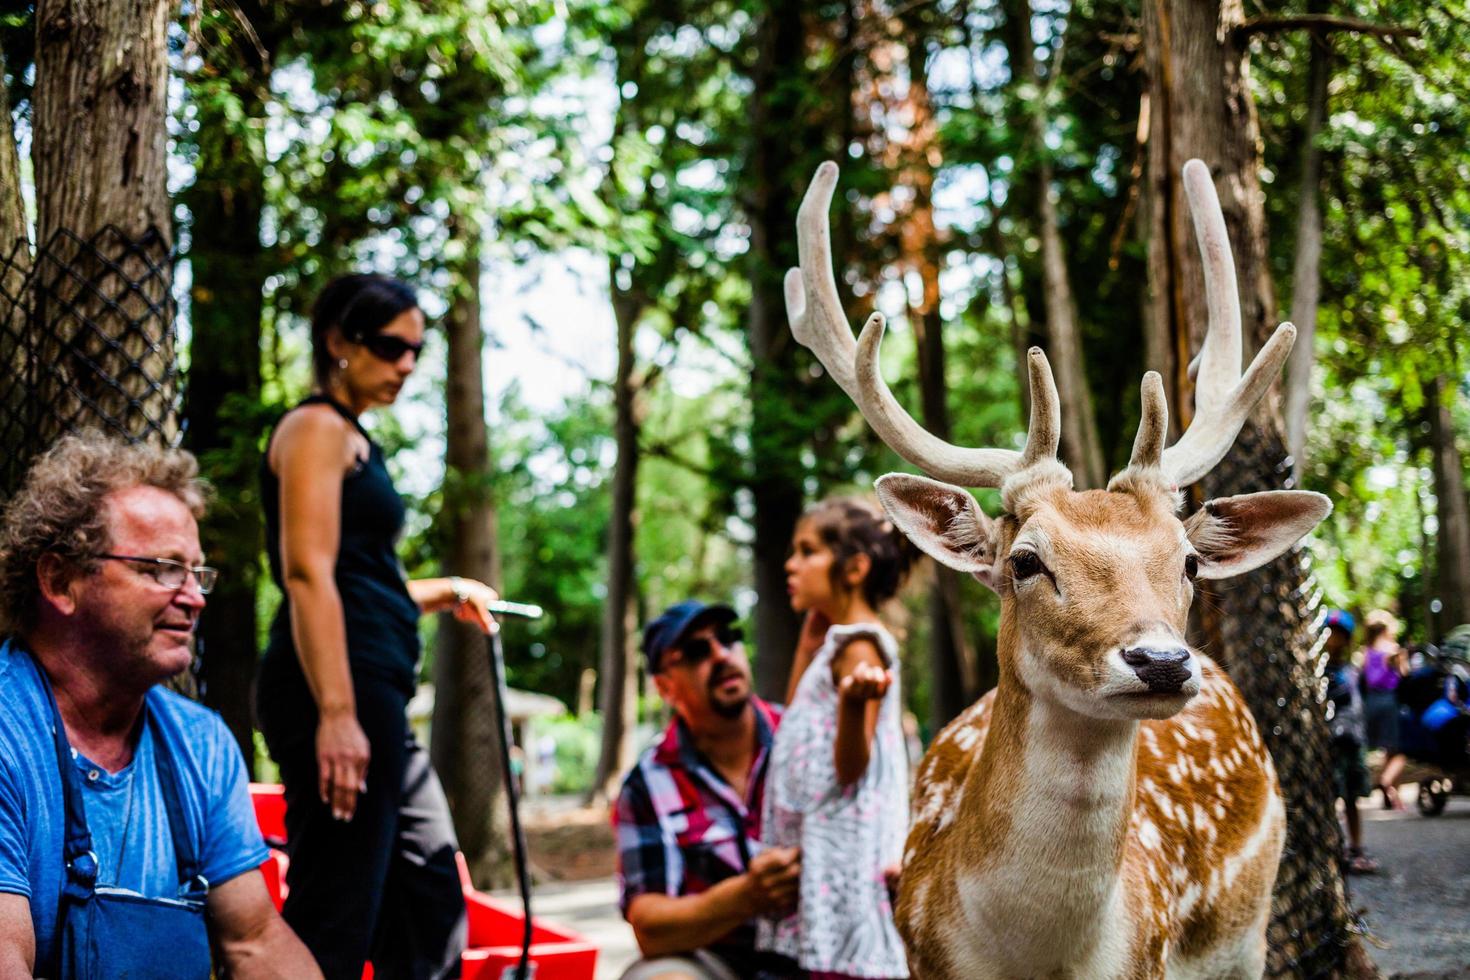 editoriale - 29 luglio 2014 al parc safari, quebec, canada in una bella giornata estiva. foto